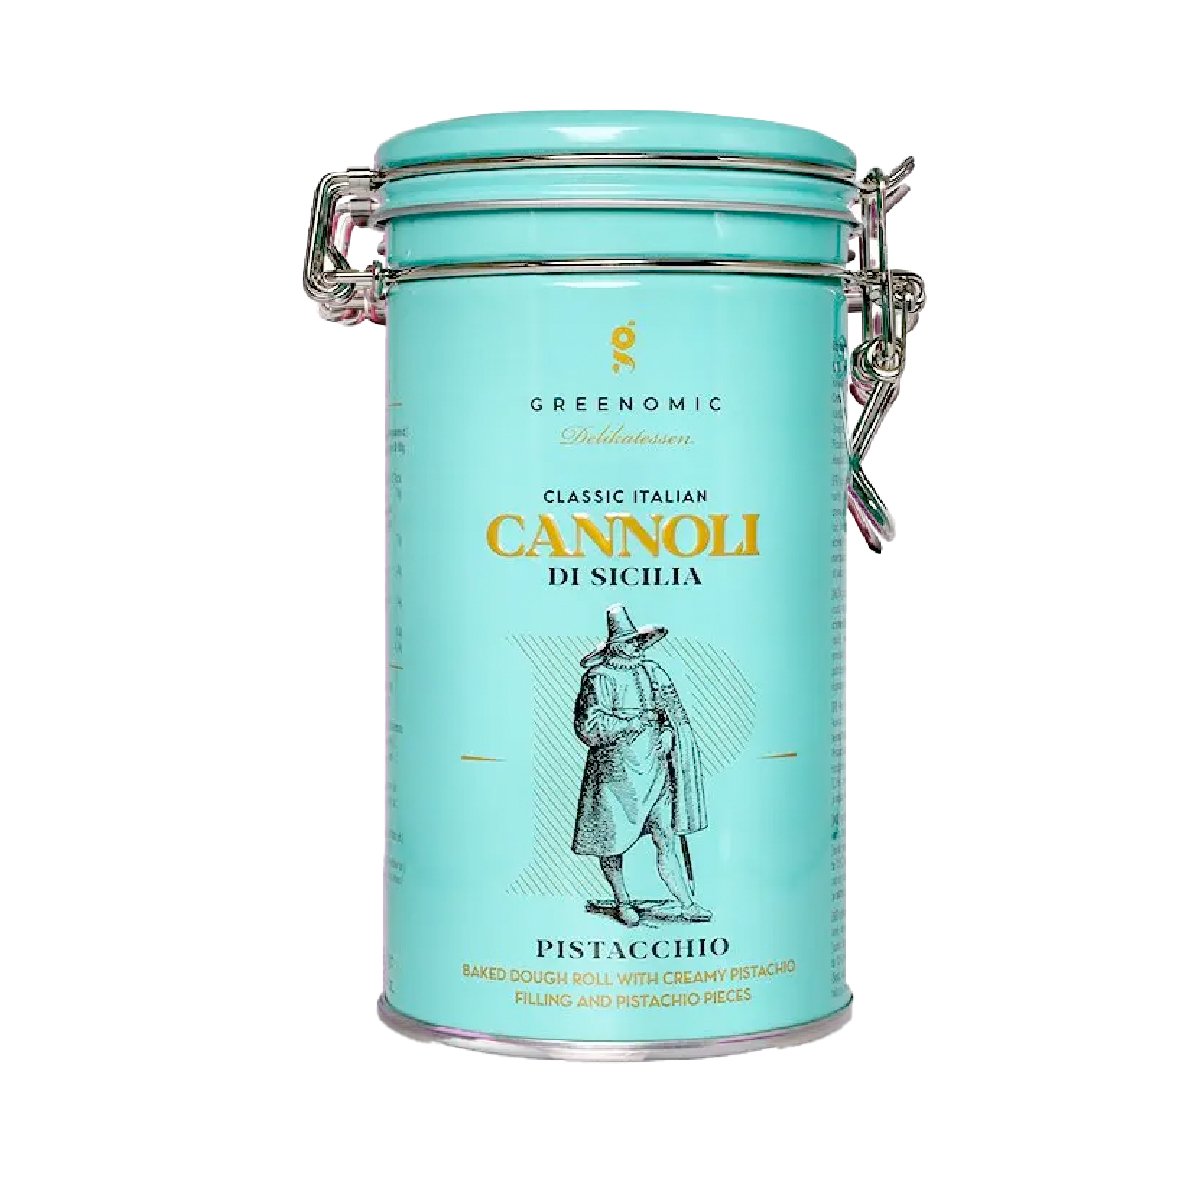 Greenomic Cannoli di Sicilia Pistacchio Tin - Goldmädchen-Shop